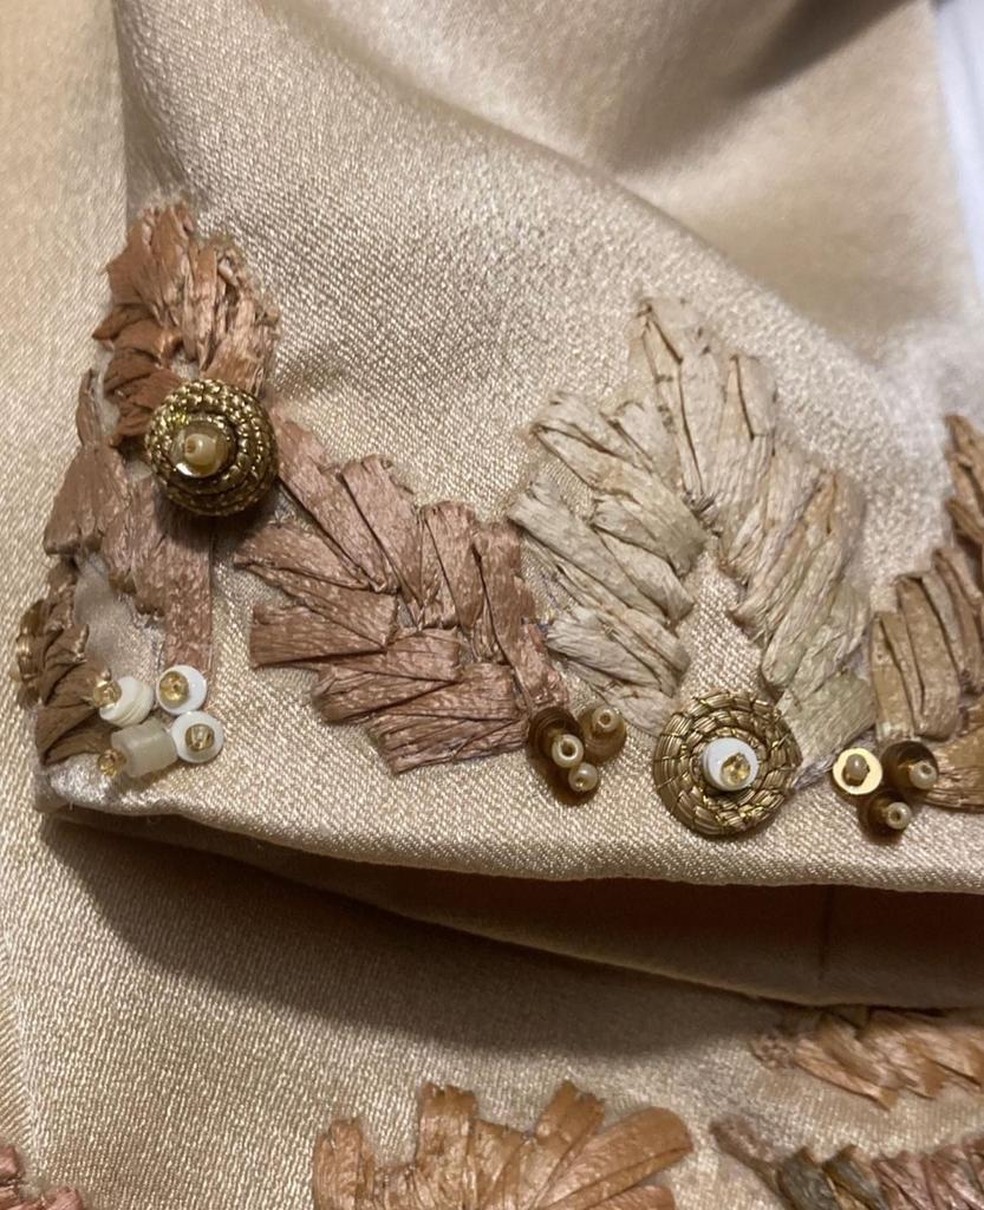 Detalhe do capim dourado na roupa de Janja — Foto: Divulgação/ Instagram @helorocha